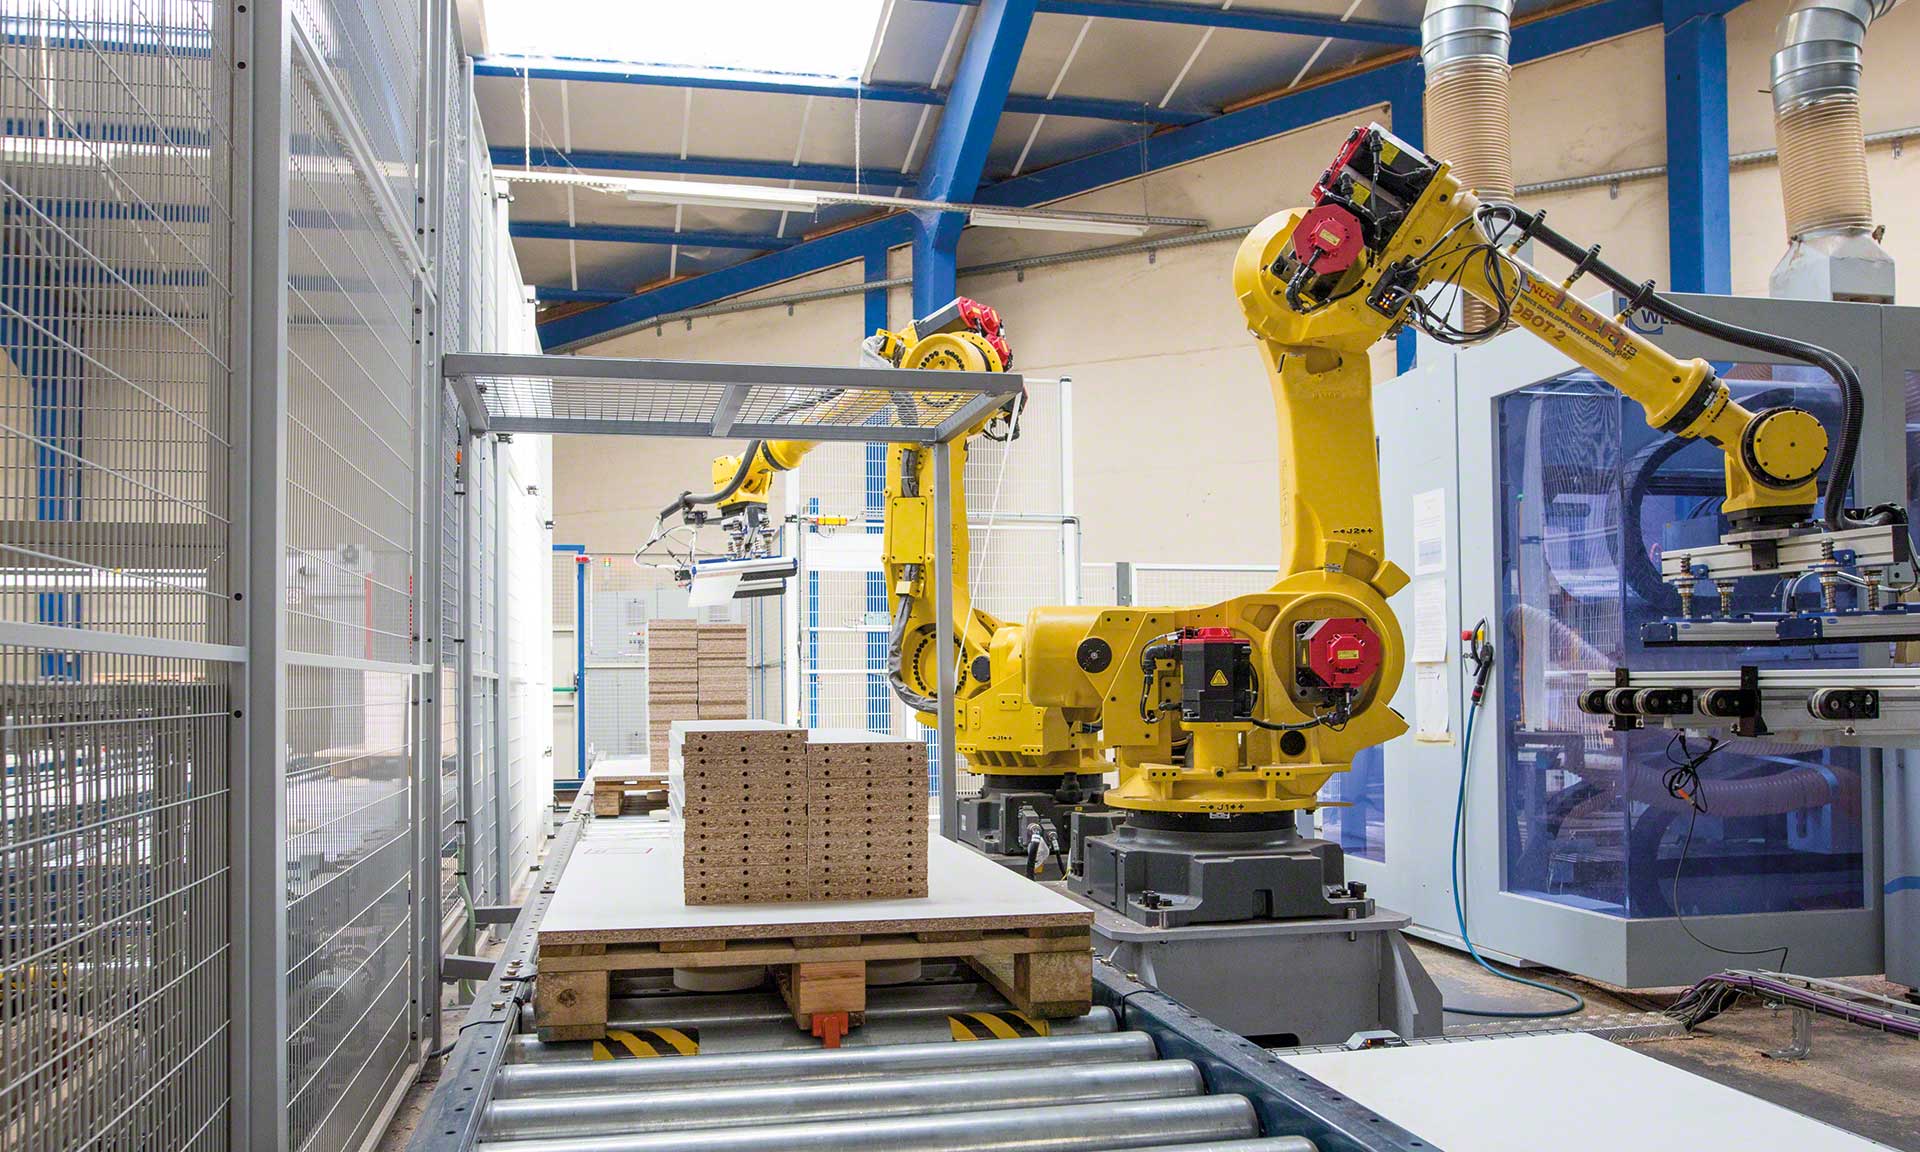 拣货机器人提高了订单处理的速度和准确性